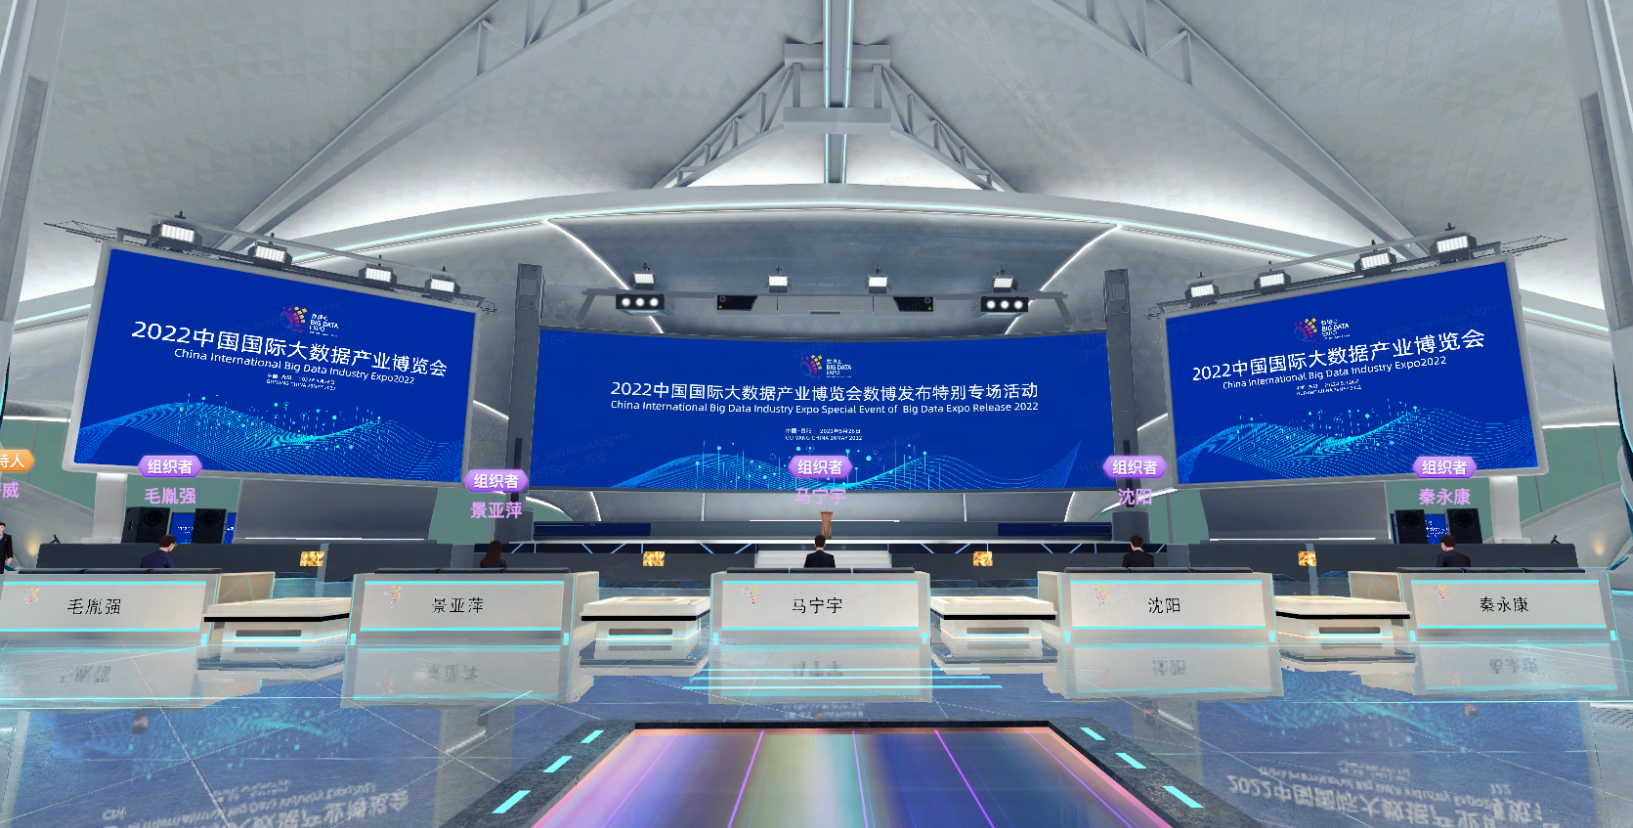 图片展示了一个现代化的会议场馆，有多个屏幕显示2022年的文字信息，场地宽敞，设计现代，色调以蓝白为主。